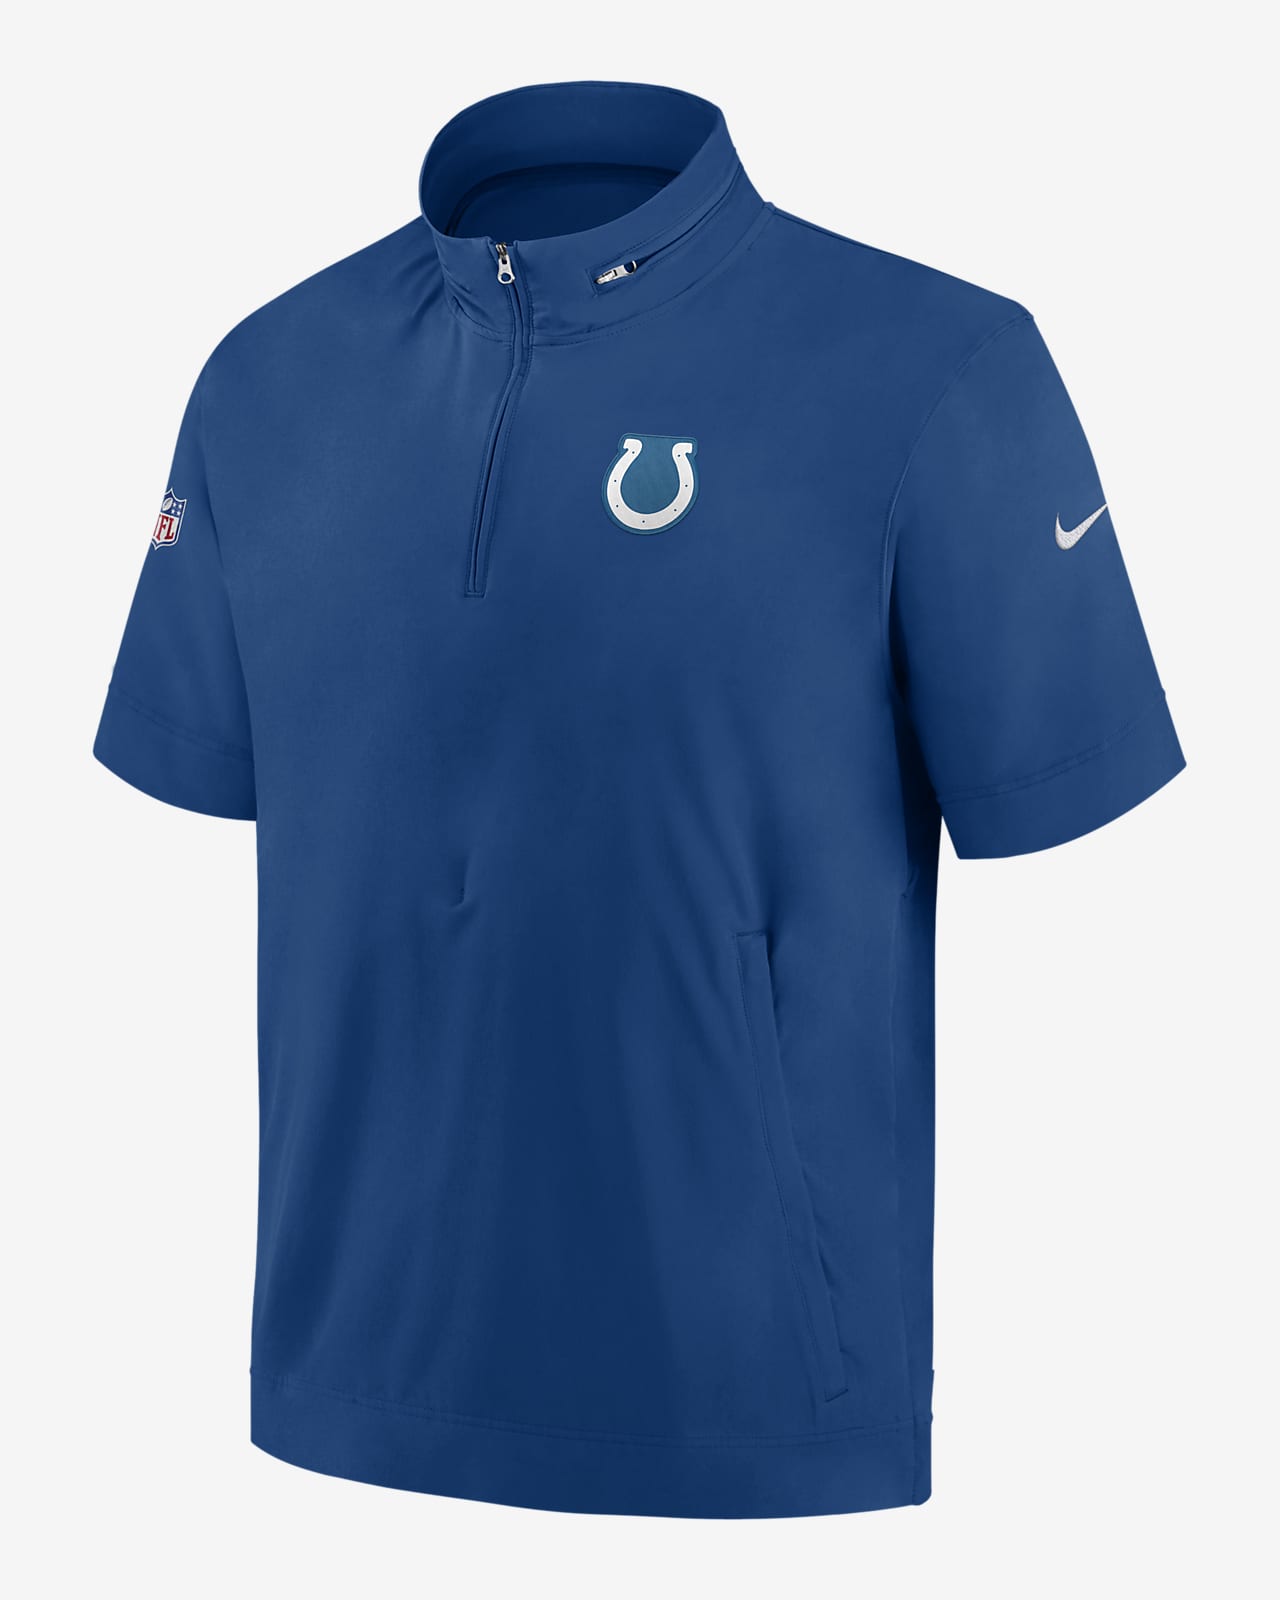 Nike Sideline Coach (NFL Indianapolis Colts) Men's Short-Sleeve Jacket